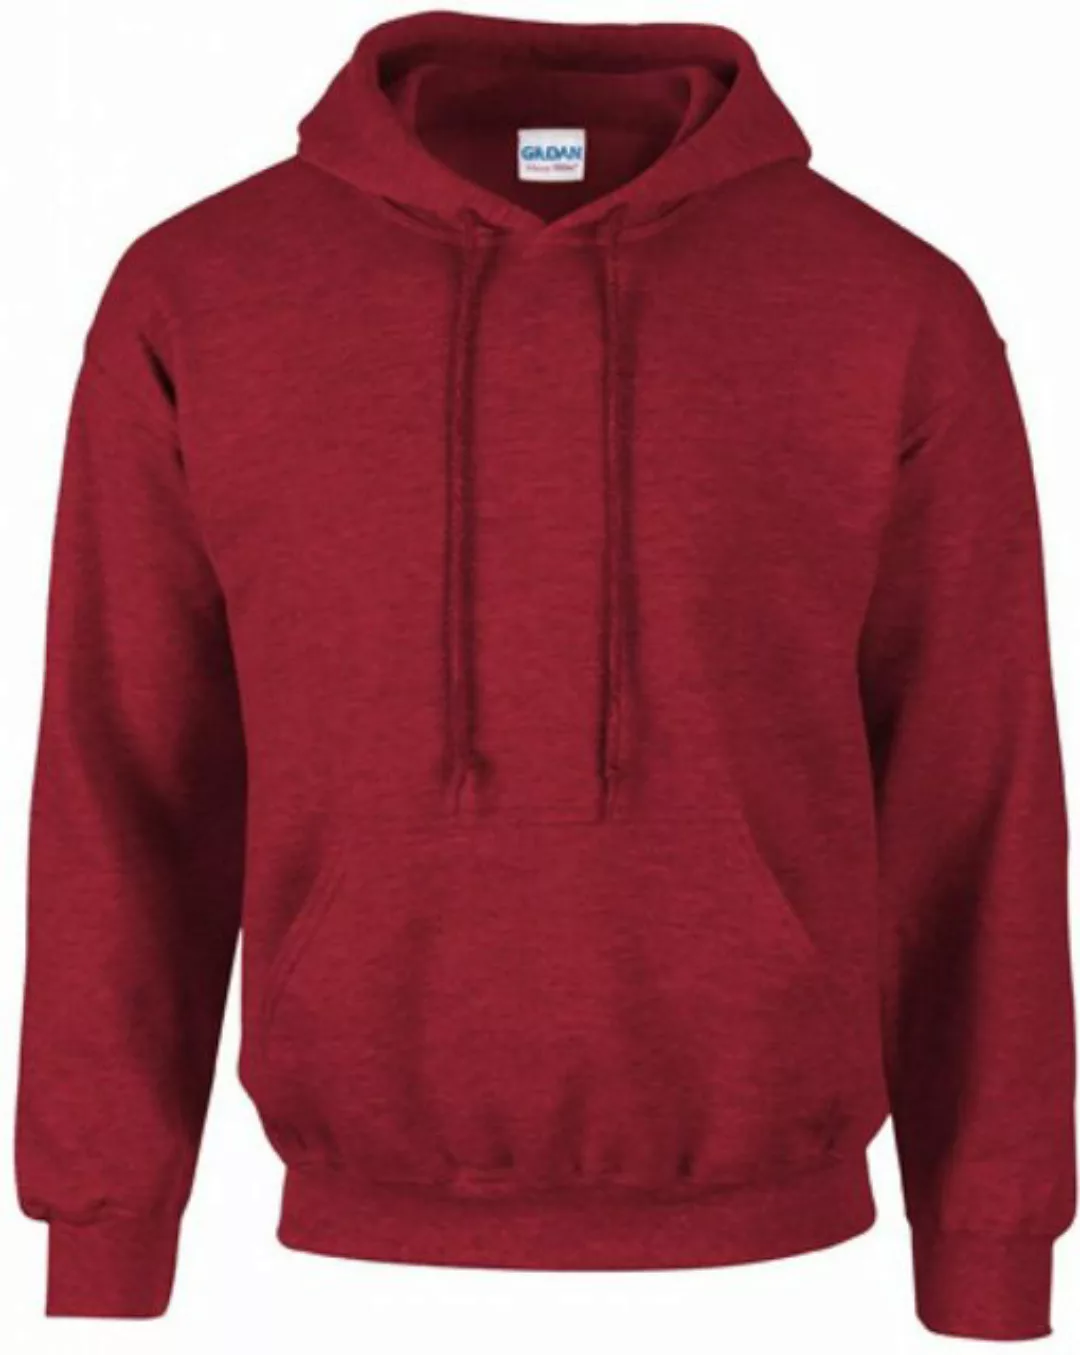 Gildan Kapuzenpullover Heavy Blend Hooded Sweatshirt / Kapuzenpullover günstig online kaufen